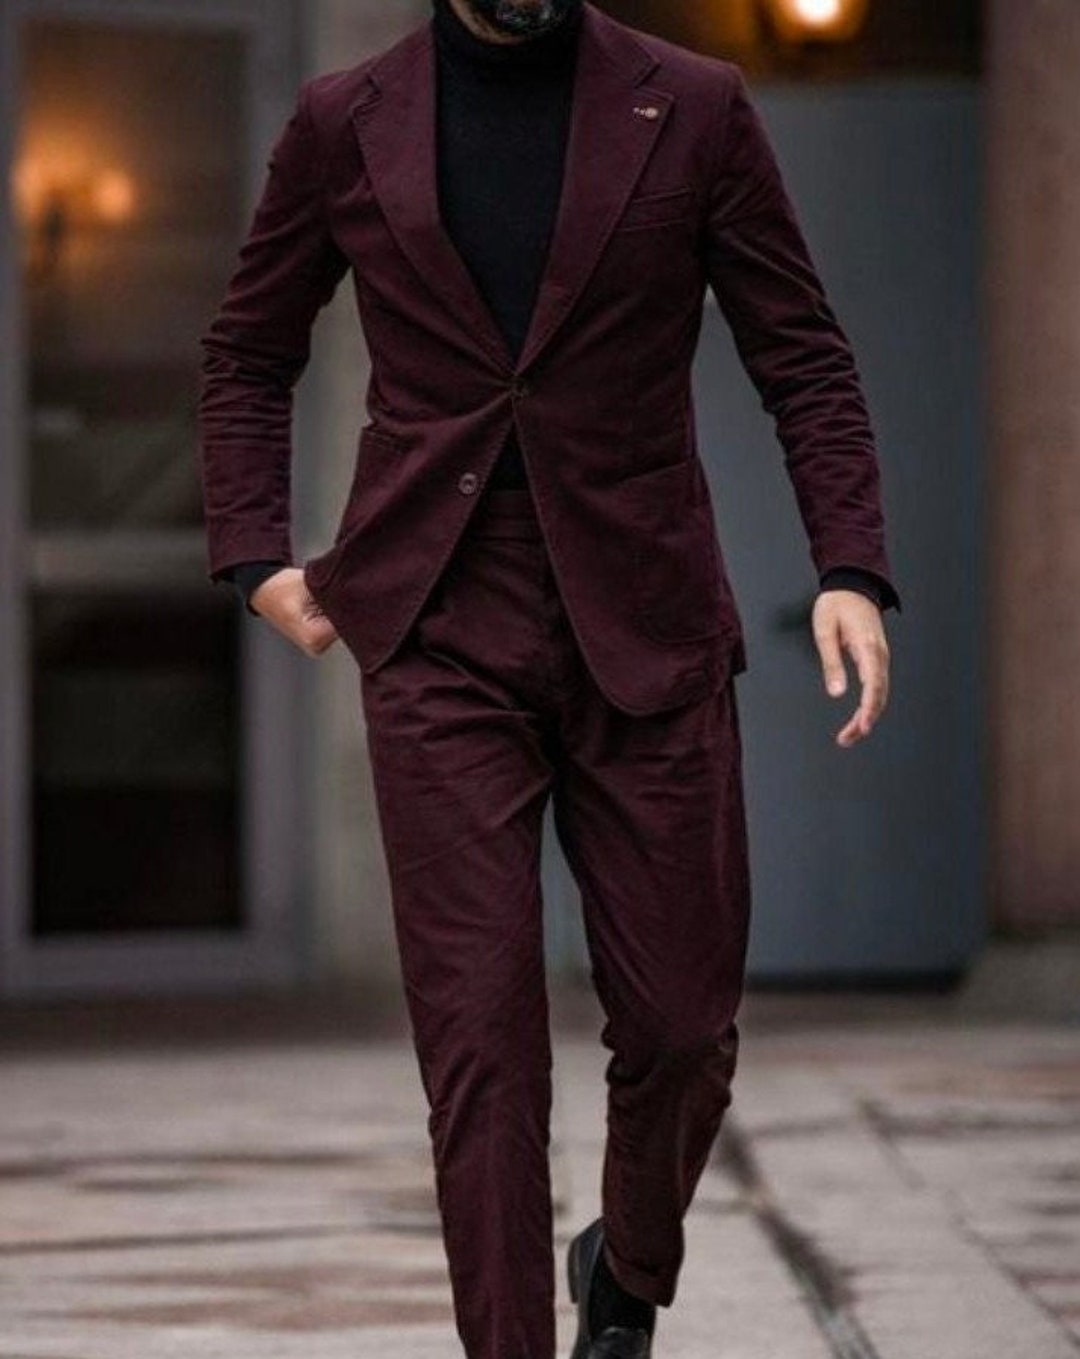 Men Suit Burgundy Men Suit Wedding Suit for Men Stylish Suit - Etsy